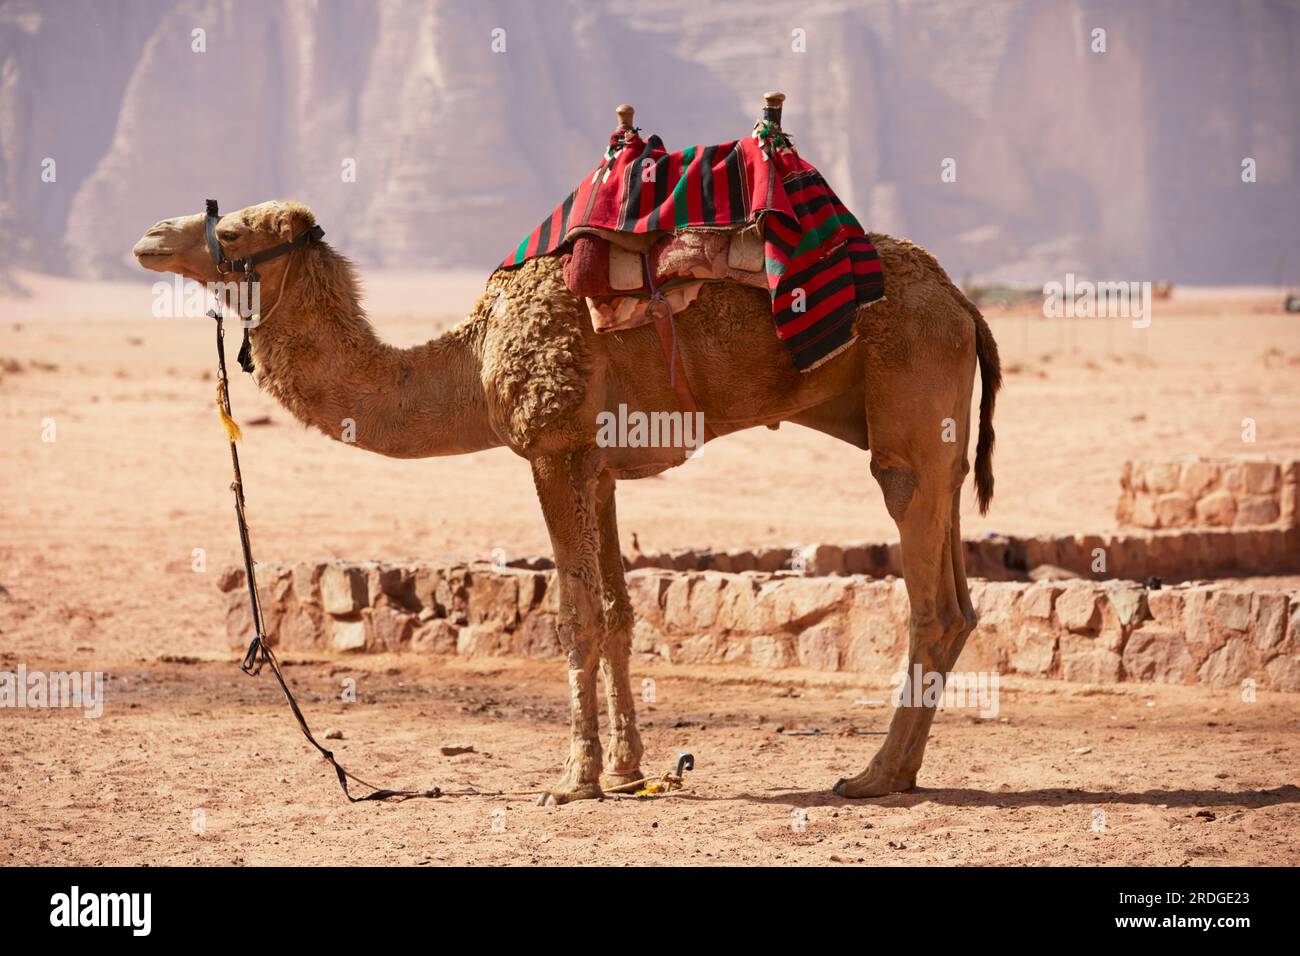 Saddled camel standing, mountain in background, Wadi Rum, Aquaba, Jordan Stock Photo